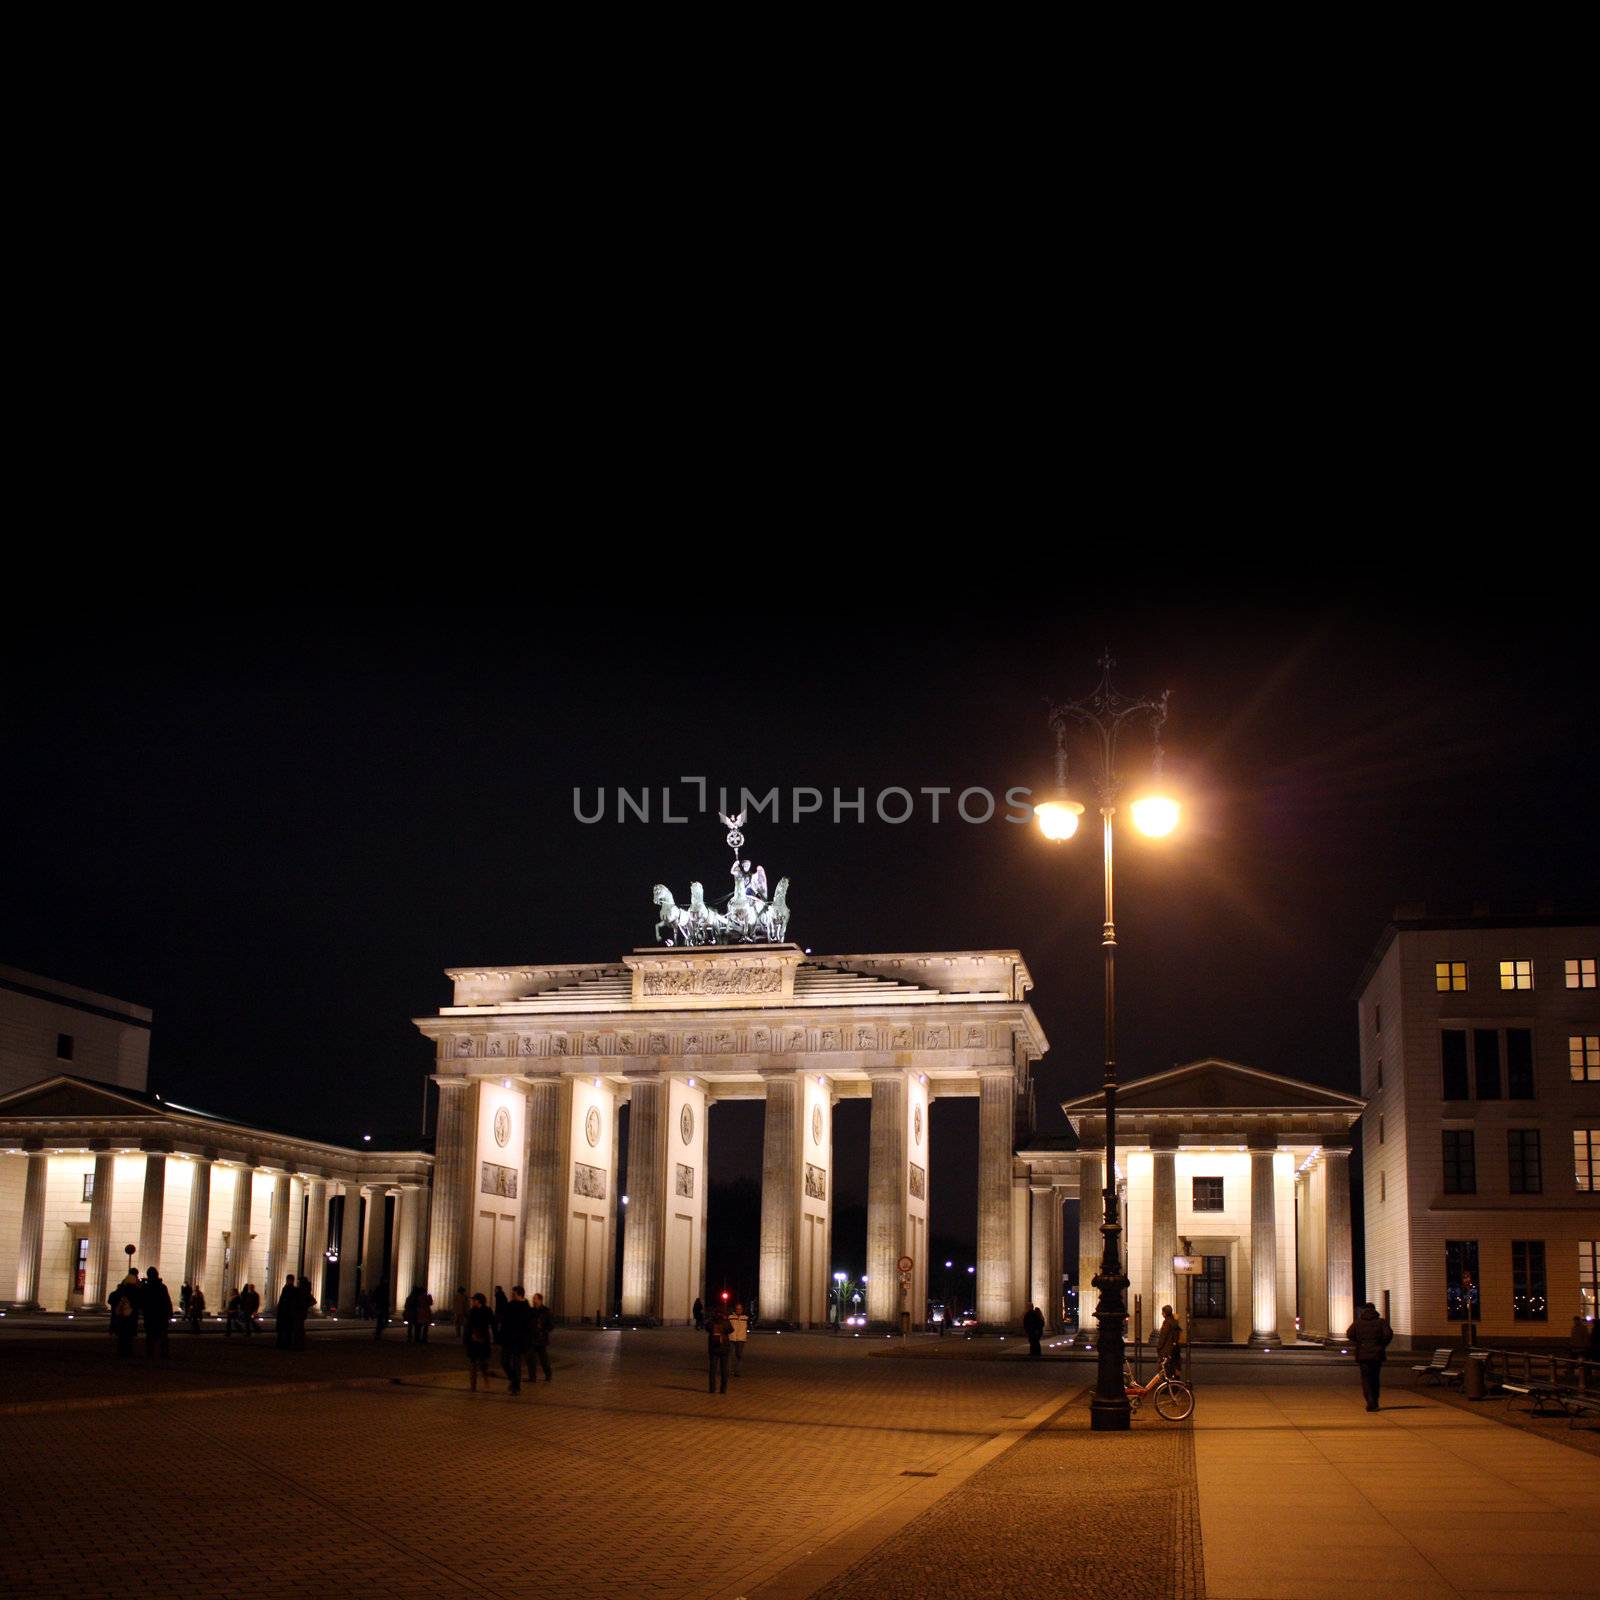 berlin at night by photochecker